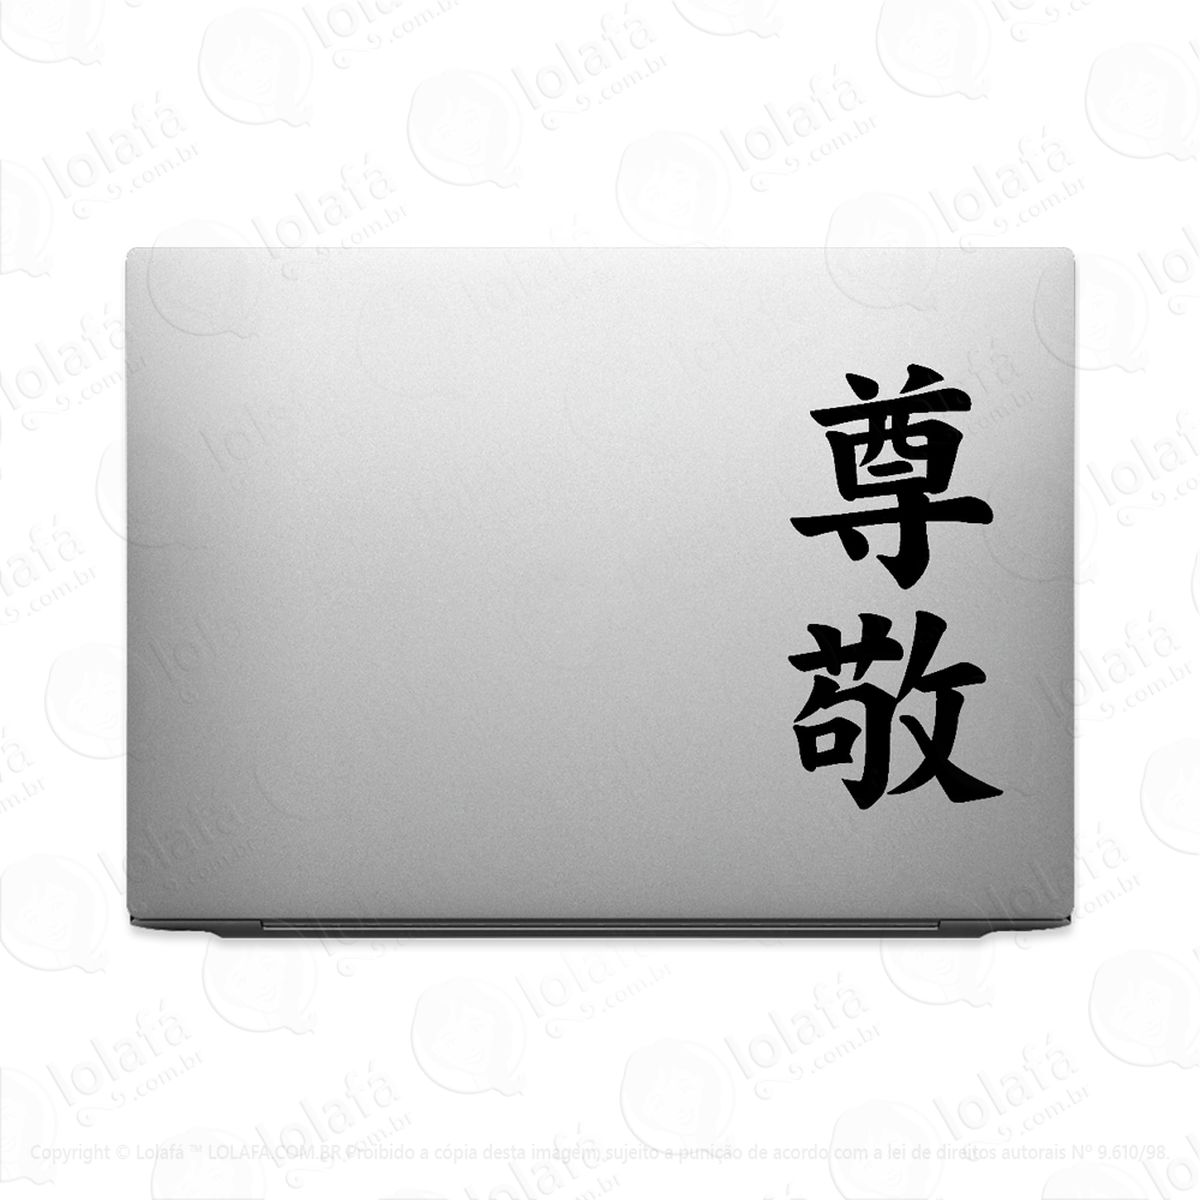 adesivo tablet notebook pc respeito kanji japonês mod:2165